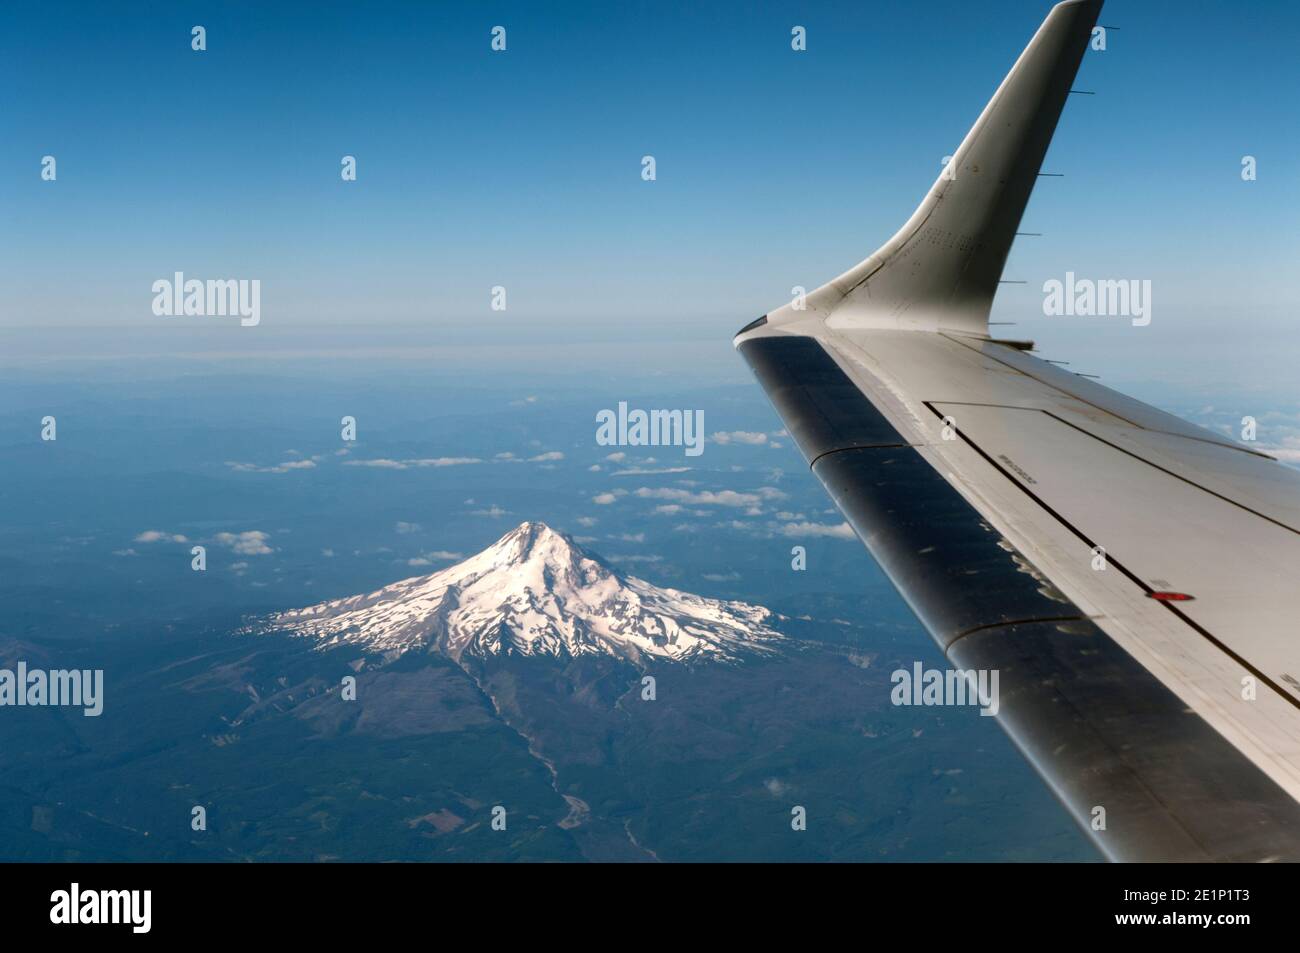 Capot de montage, Oregon, vue aérienne Banque D'Images